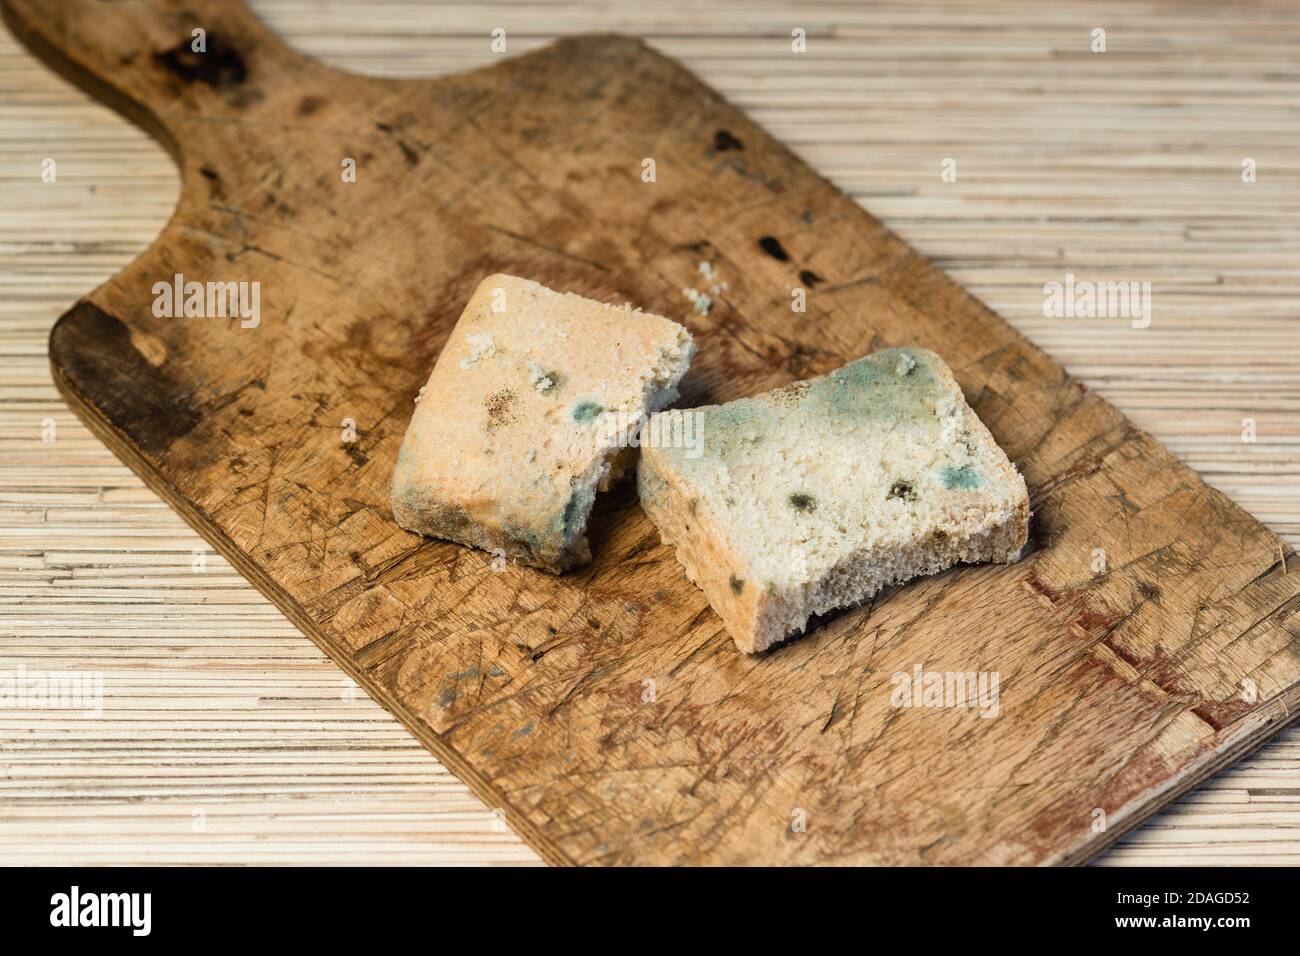 Sur une vieille planche à découper en bois se trouvent deux tranches de pain non comestible mouleux. Moule vert Banque D'Images